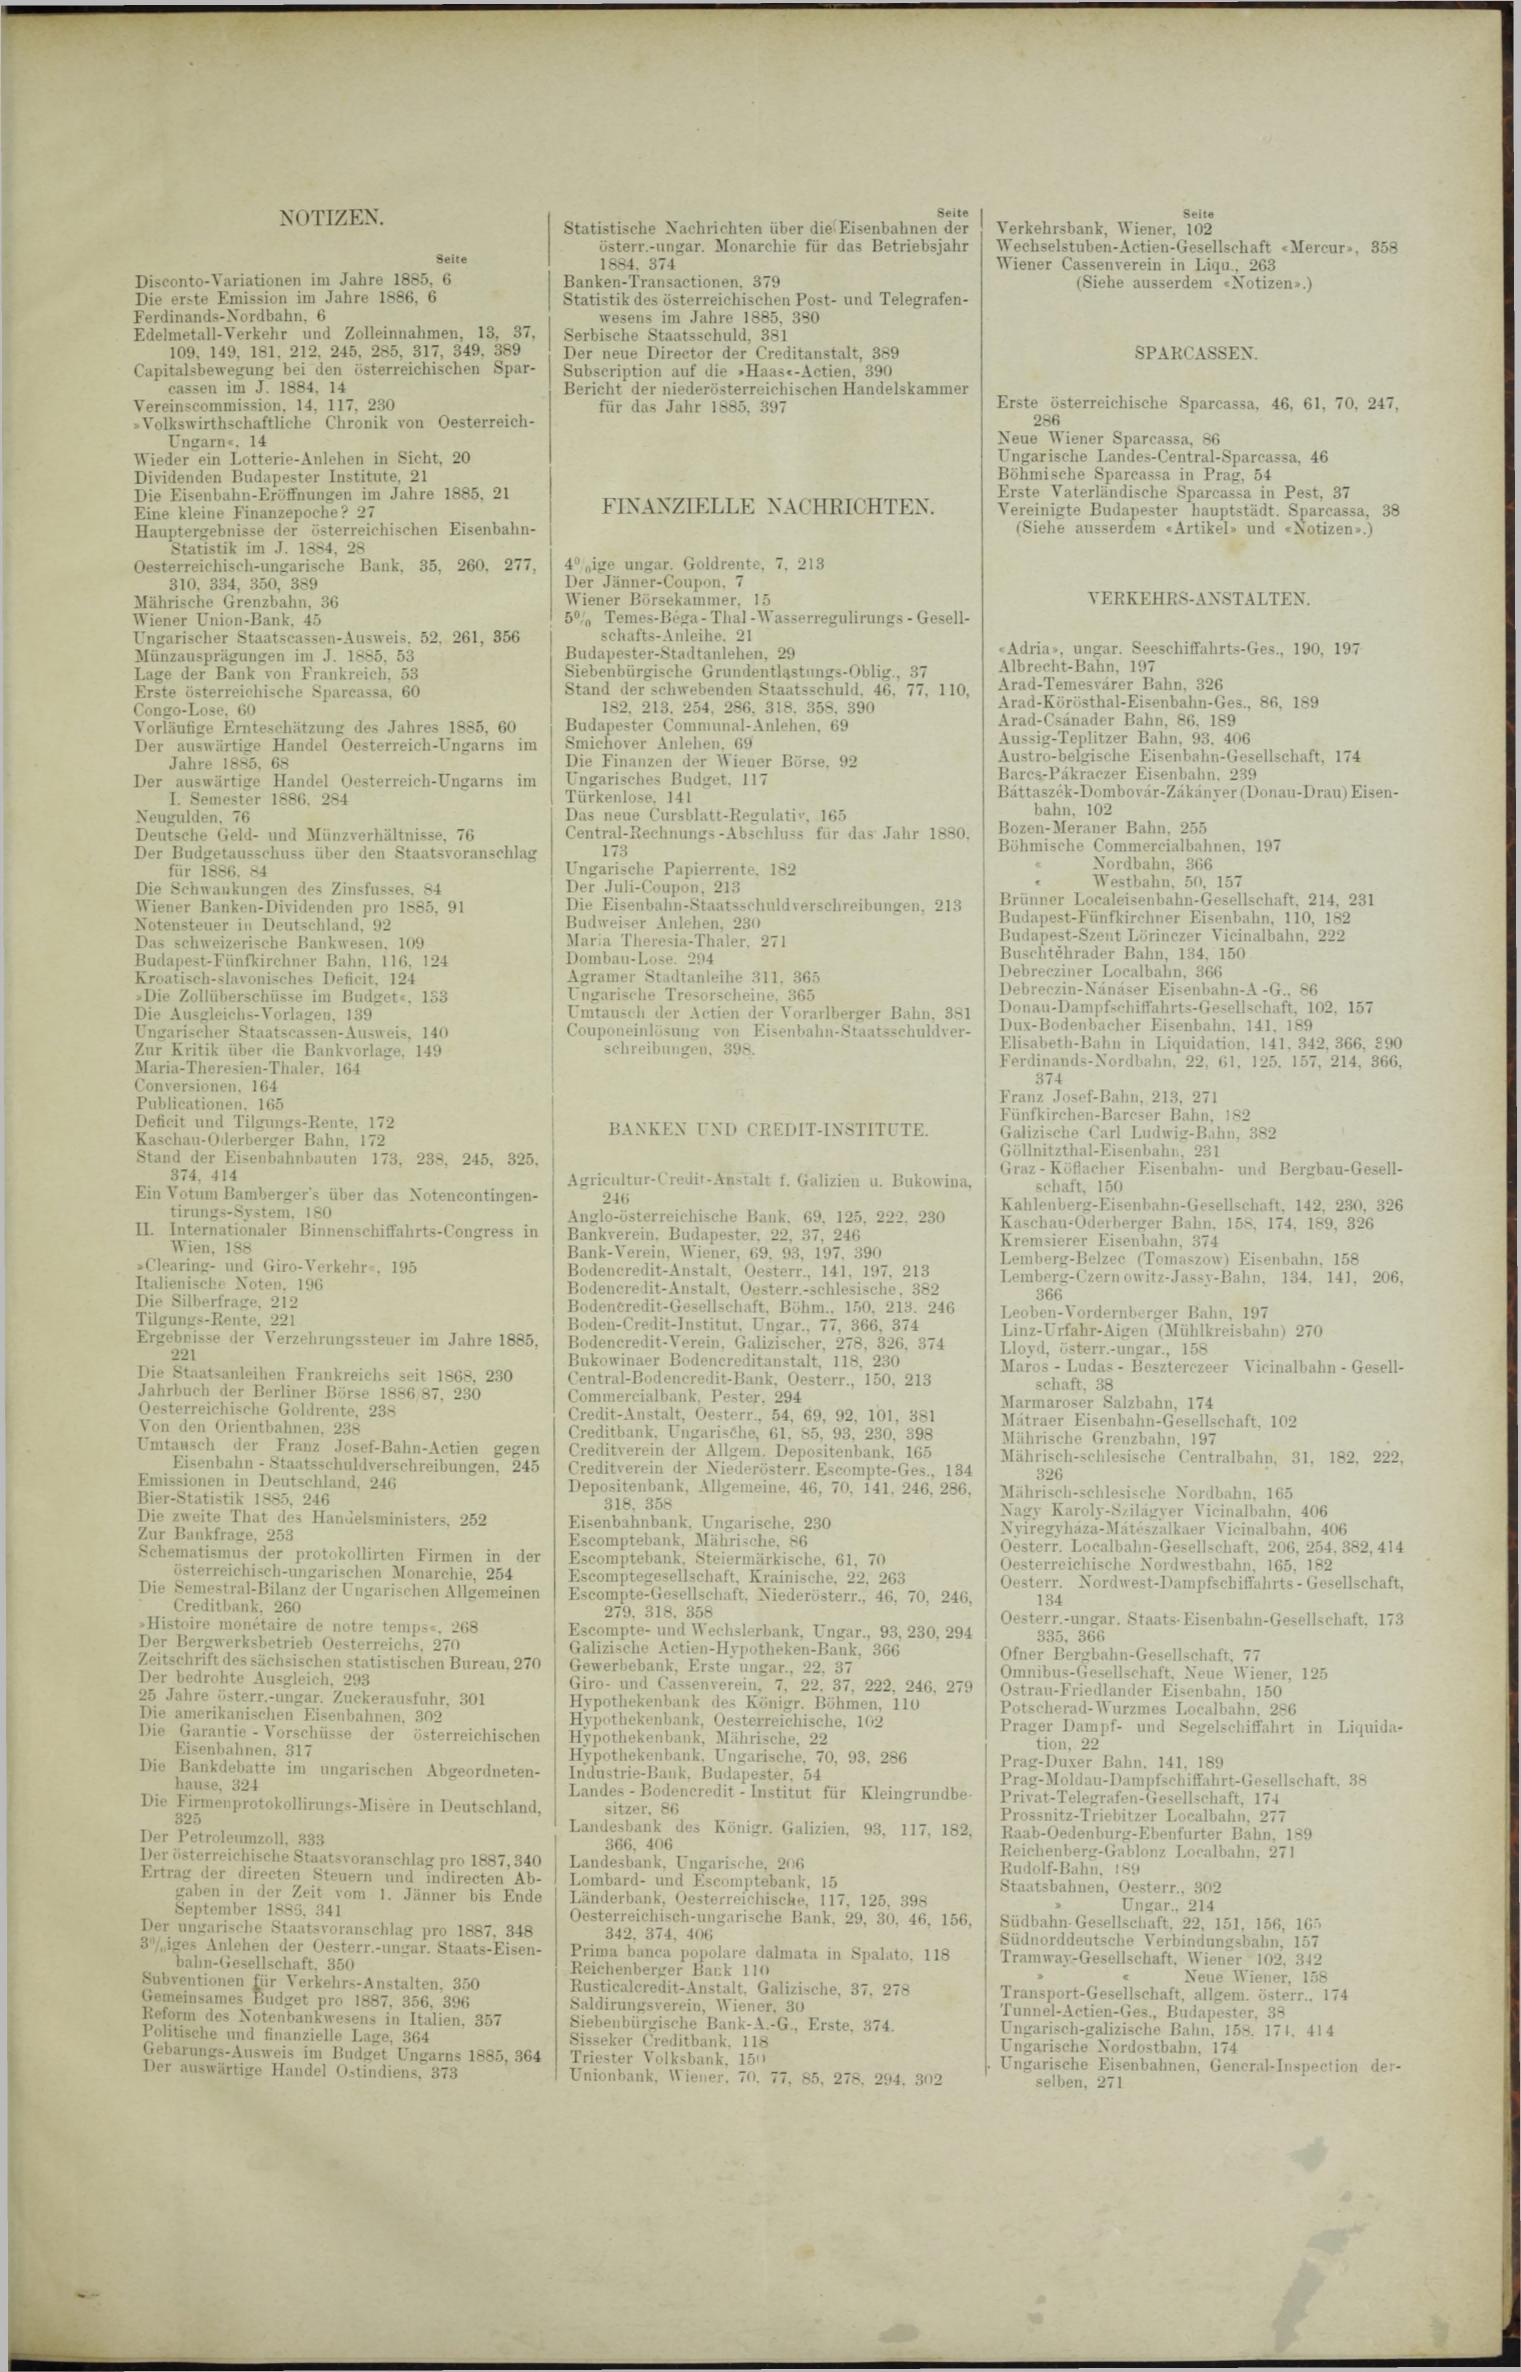 Der Tresor 04.11.1886 - Seite 11